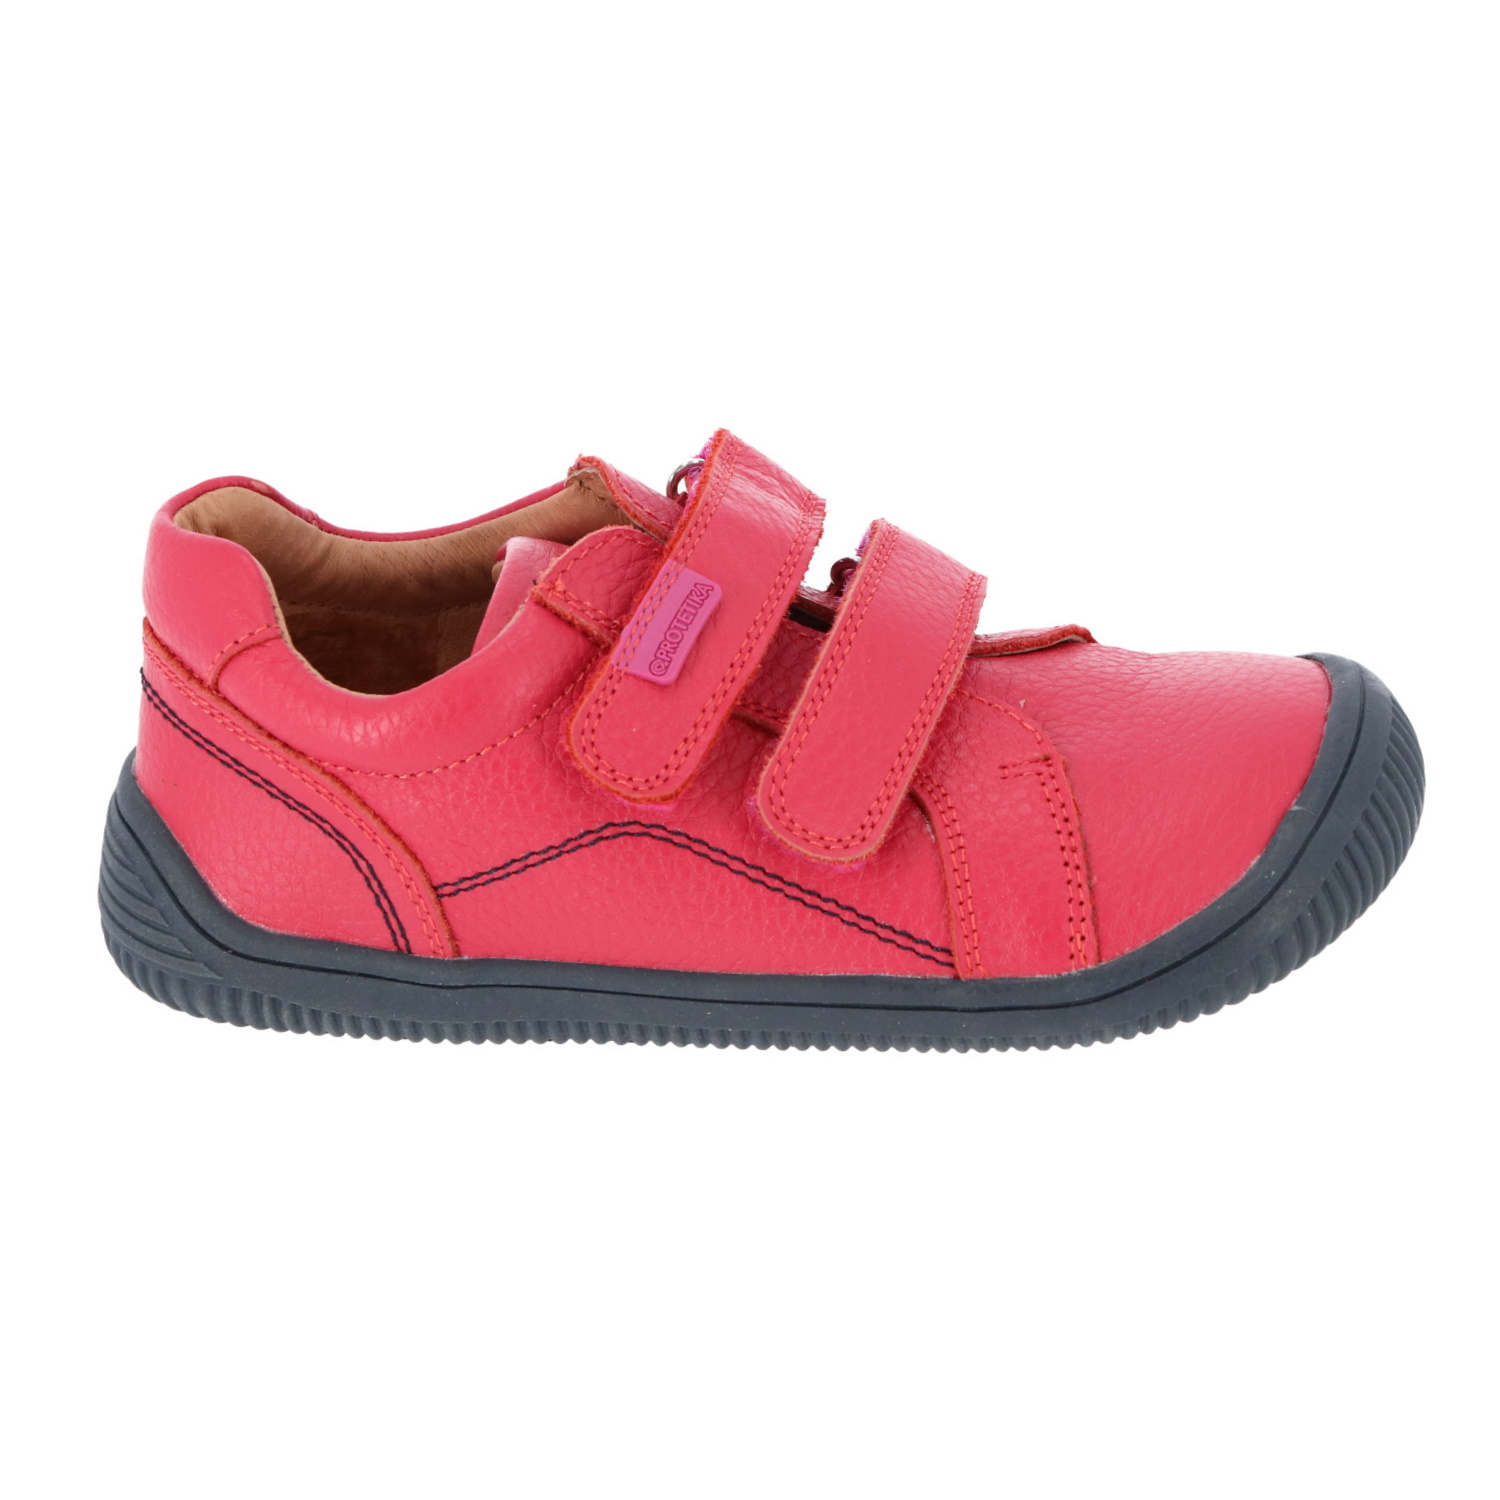 Protetika - barefootové topánky LARS pink